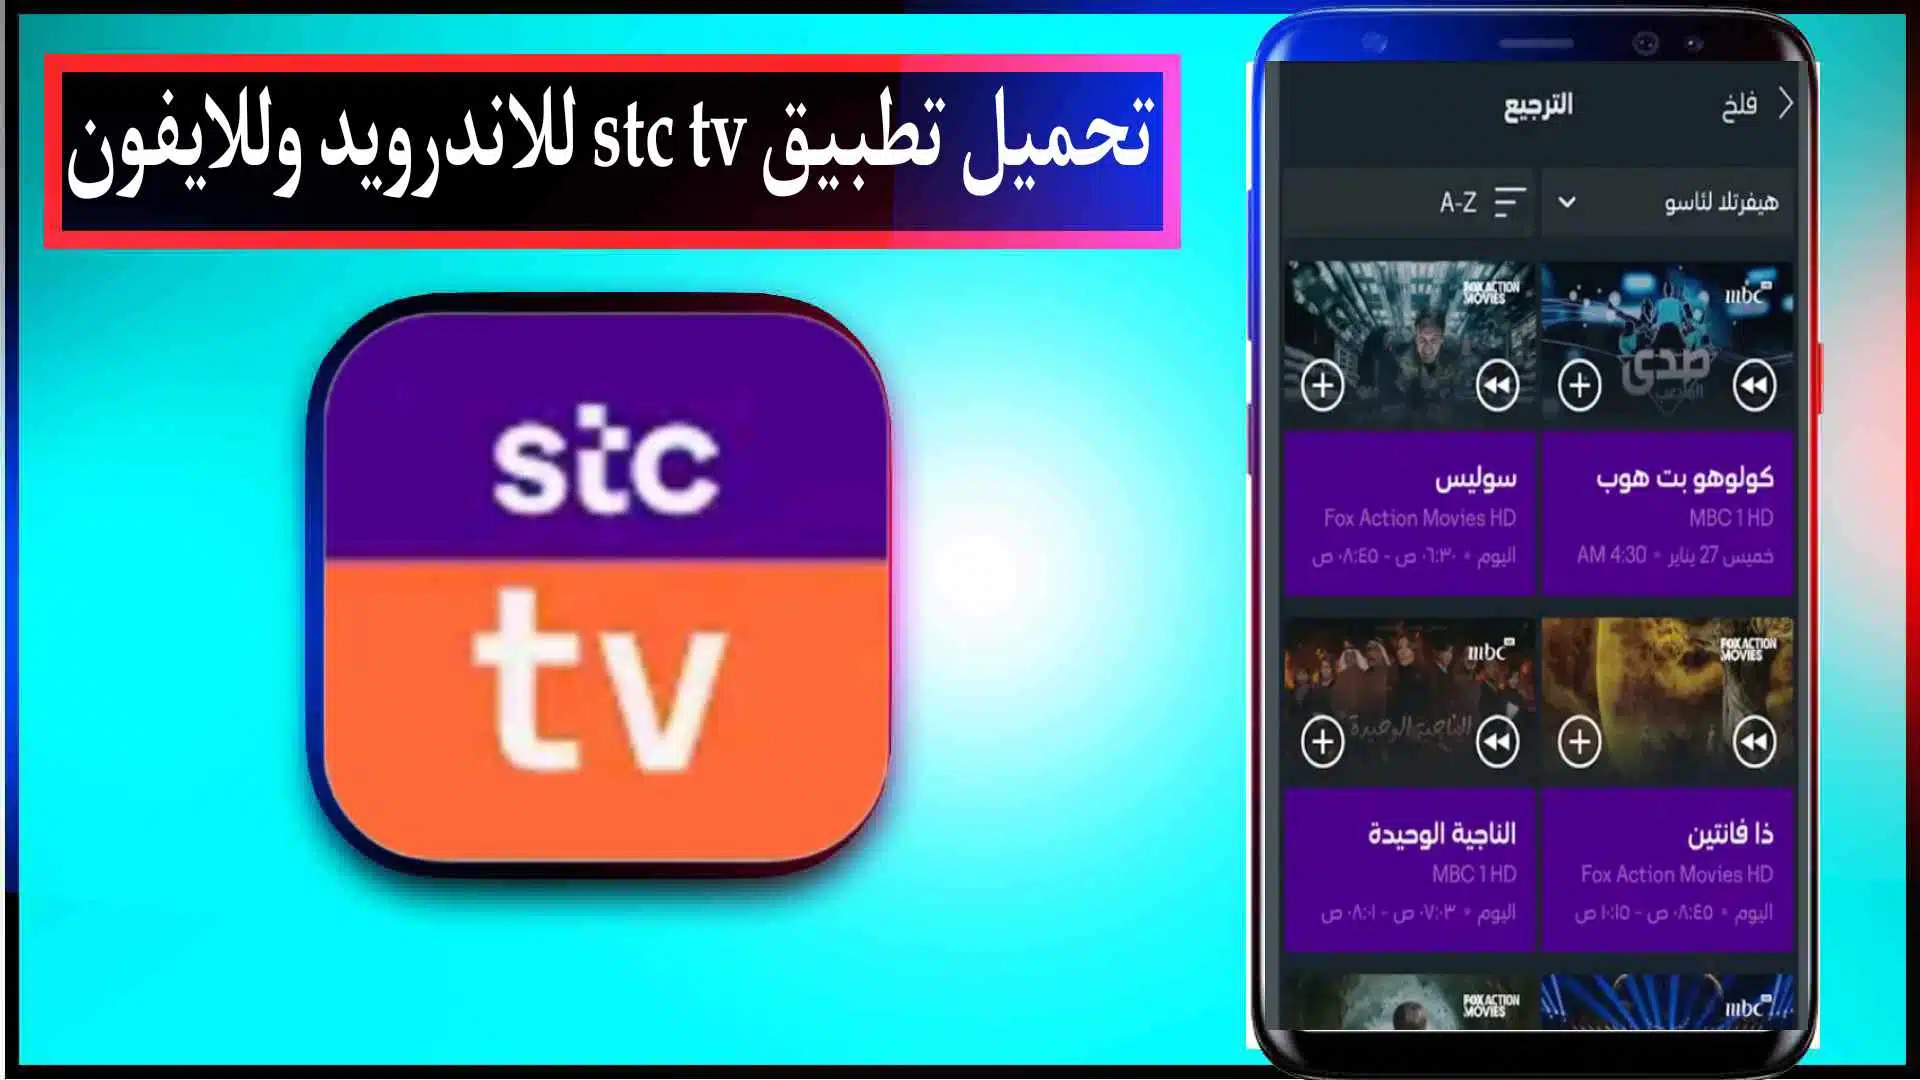 تحميل تطبيق stc tv مهكر للاندرويد وللايفون اشتراك مجاني لمشاهدة الافلام والمسلسلات 2